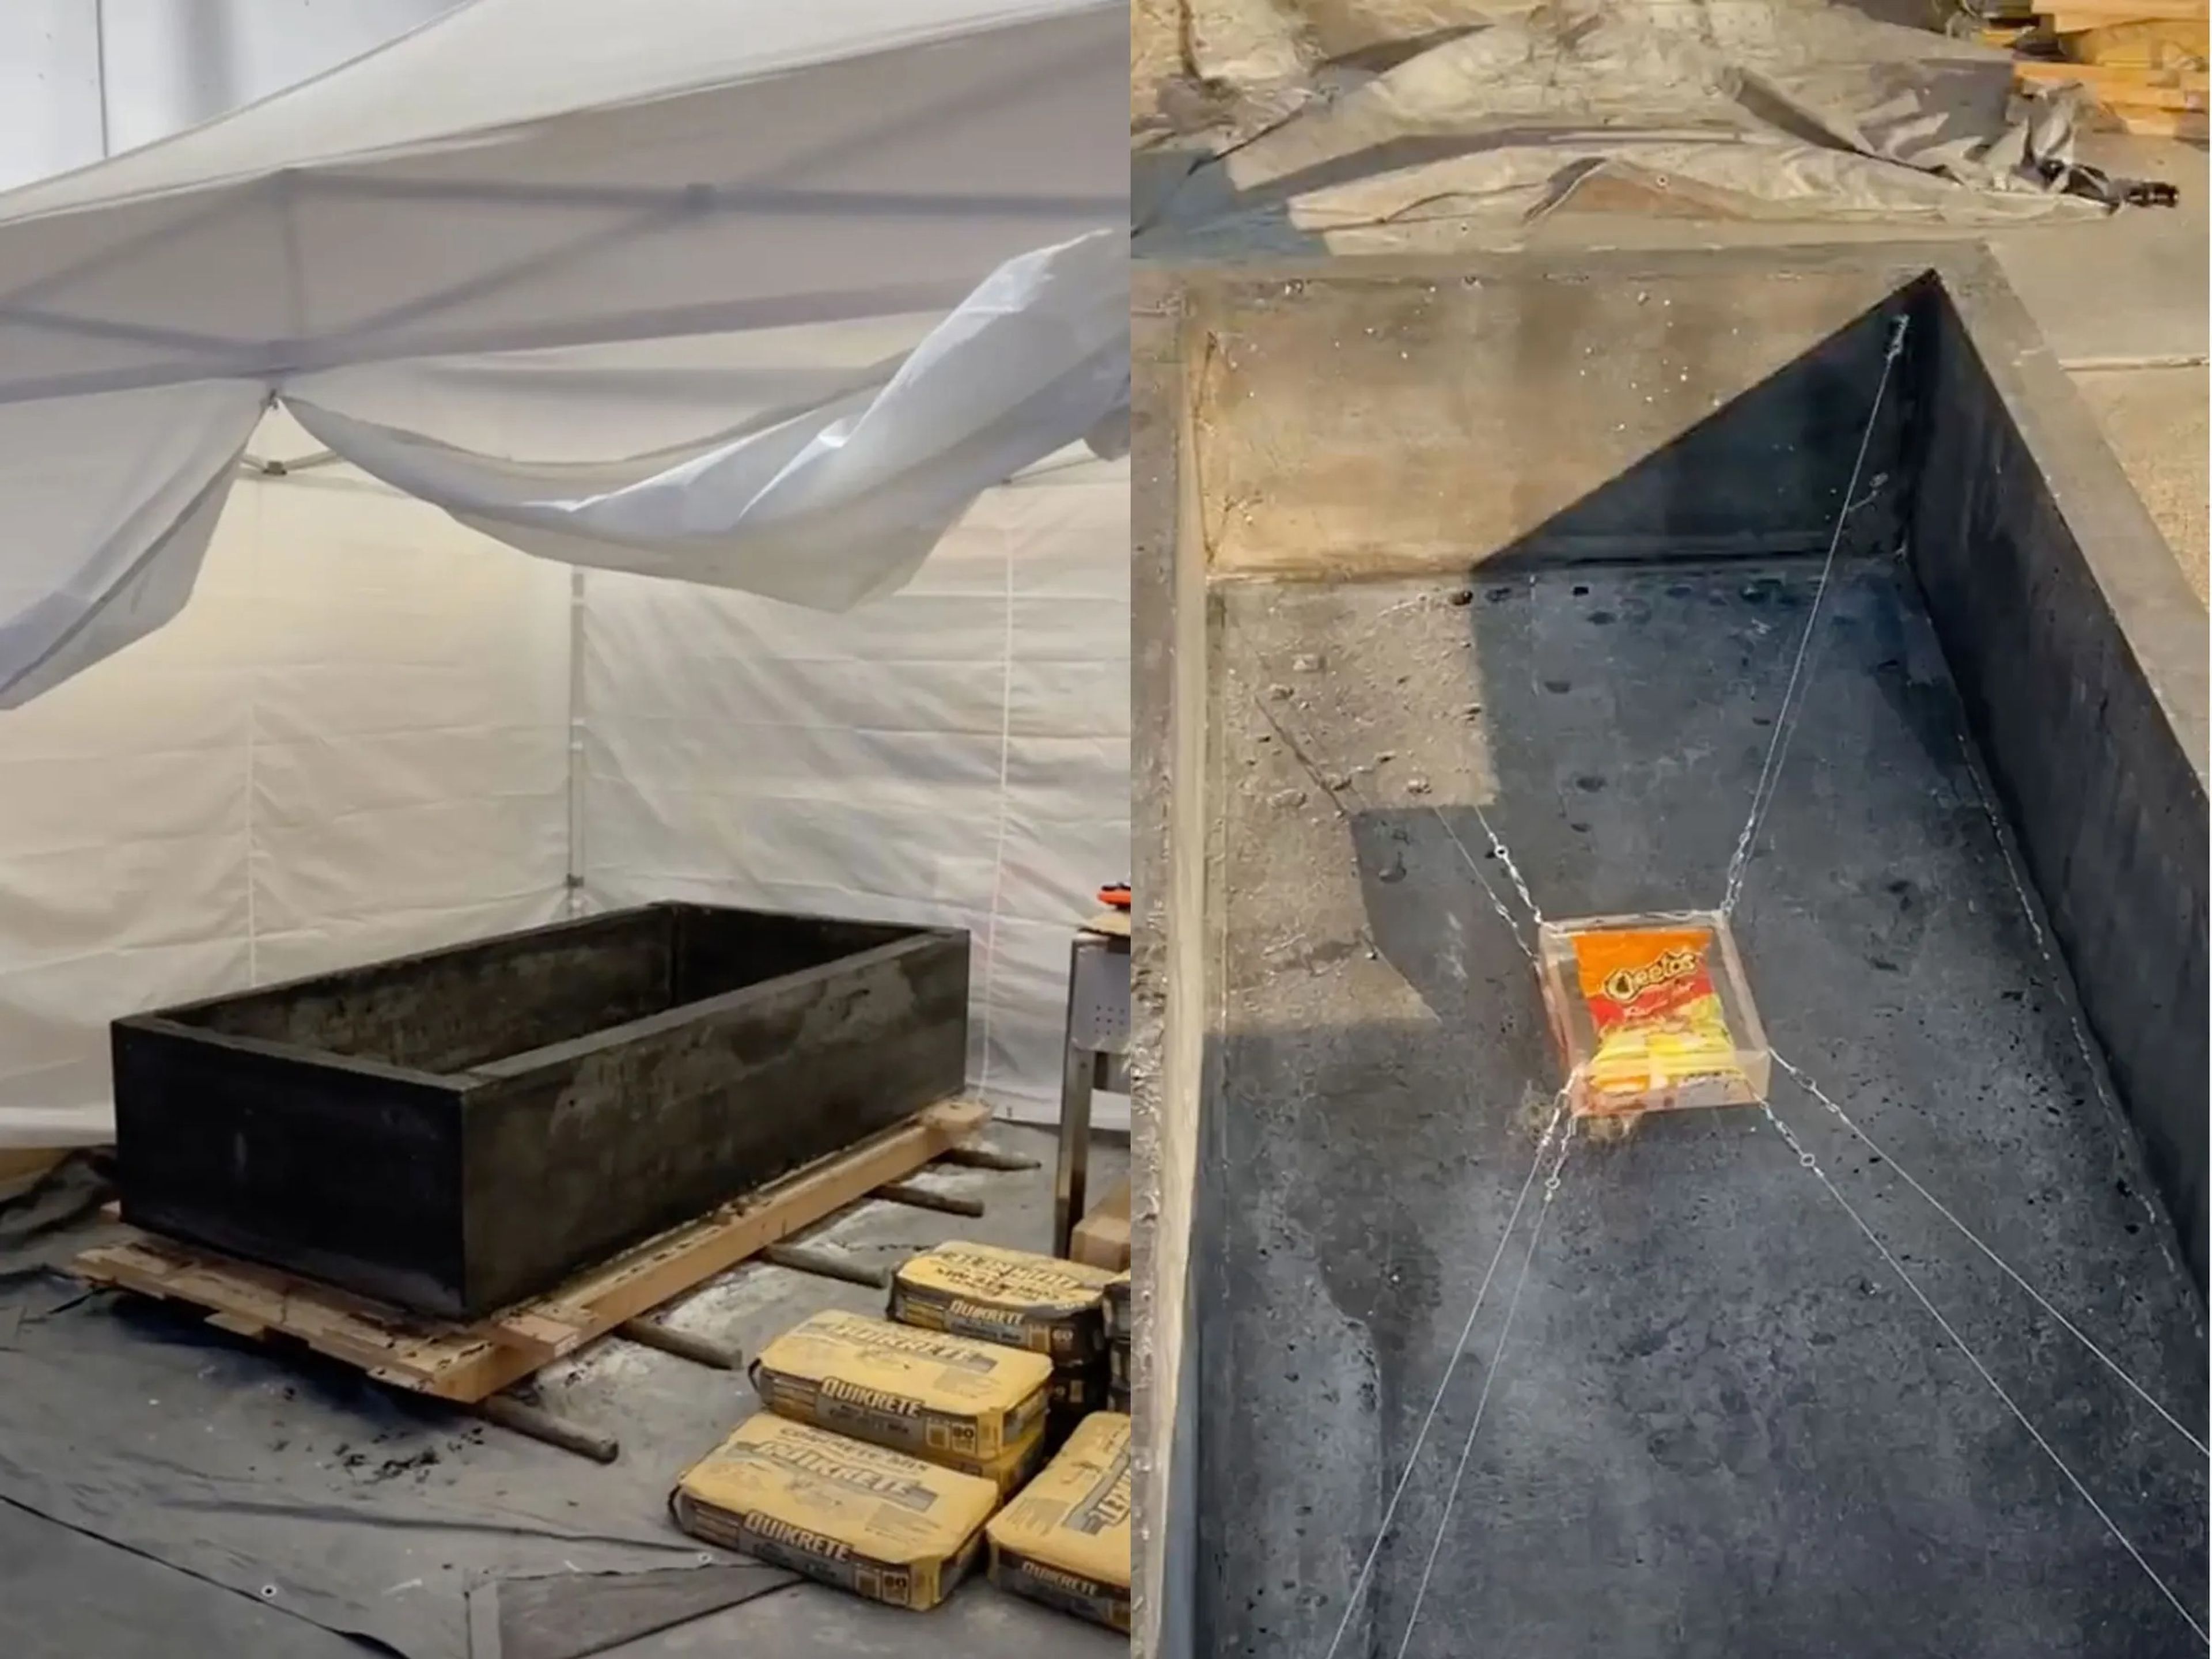 Fotos del sarcófago que ha construido un TikToker para enterrar una bolsa de Cheetos.